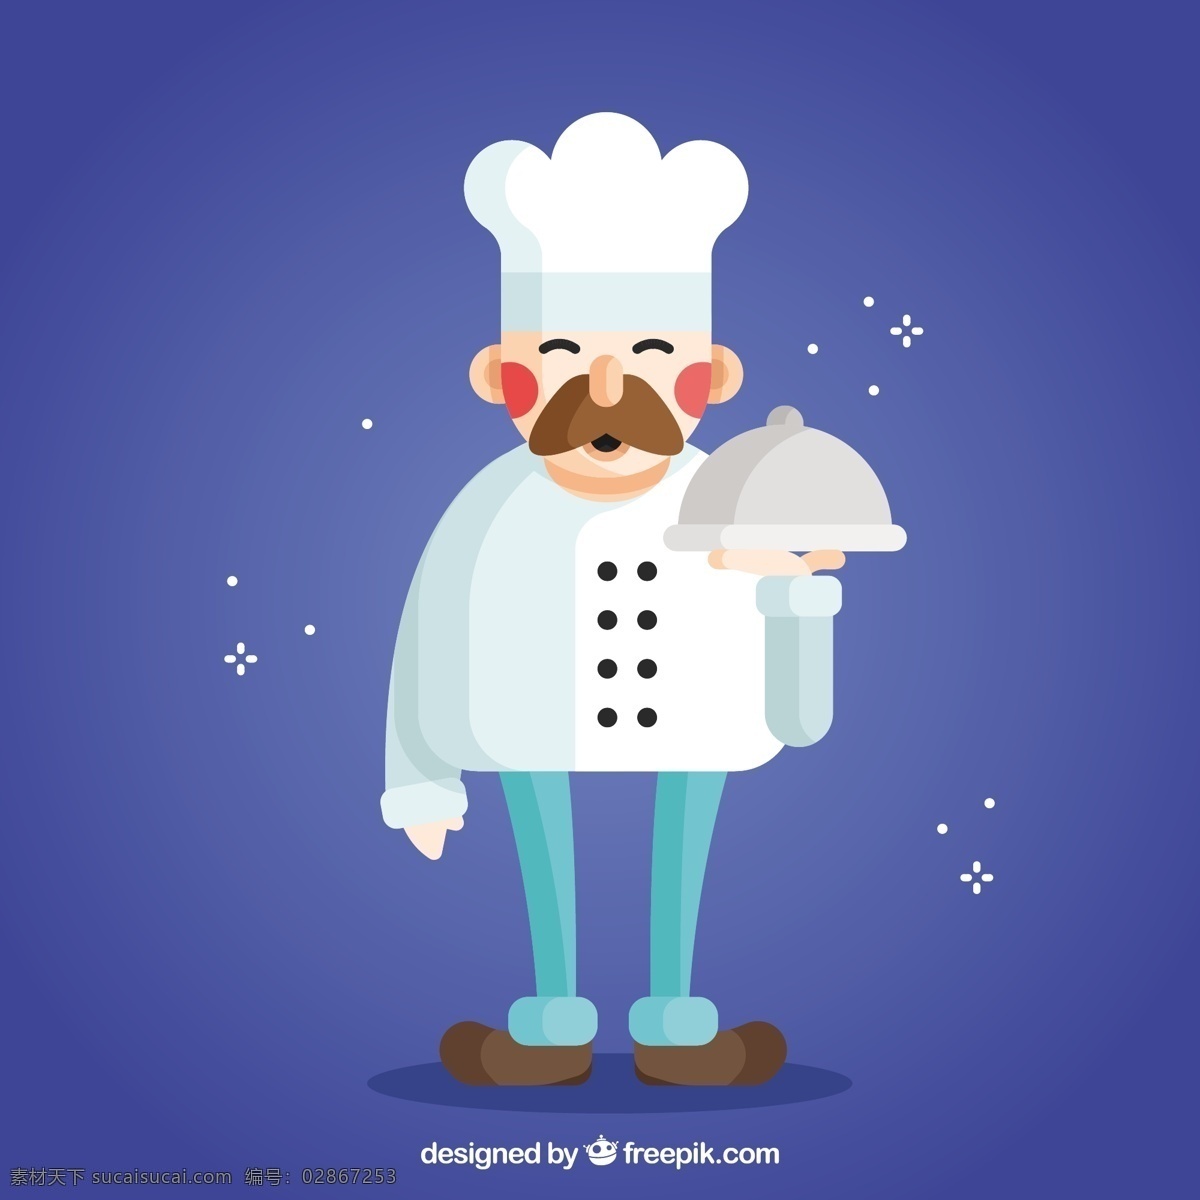 平面设计 卡通 厨师 餐厅的人 人物 厨房 平面 卡通人物 美食 男 厨师做饭 电饭煲 职业 烹饪